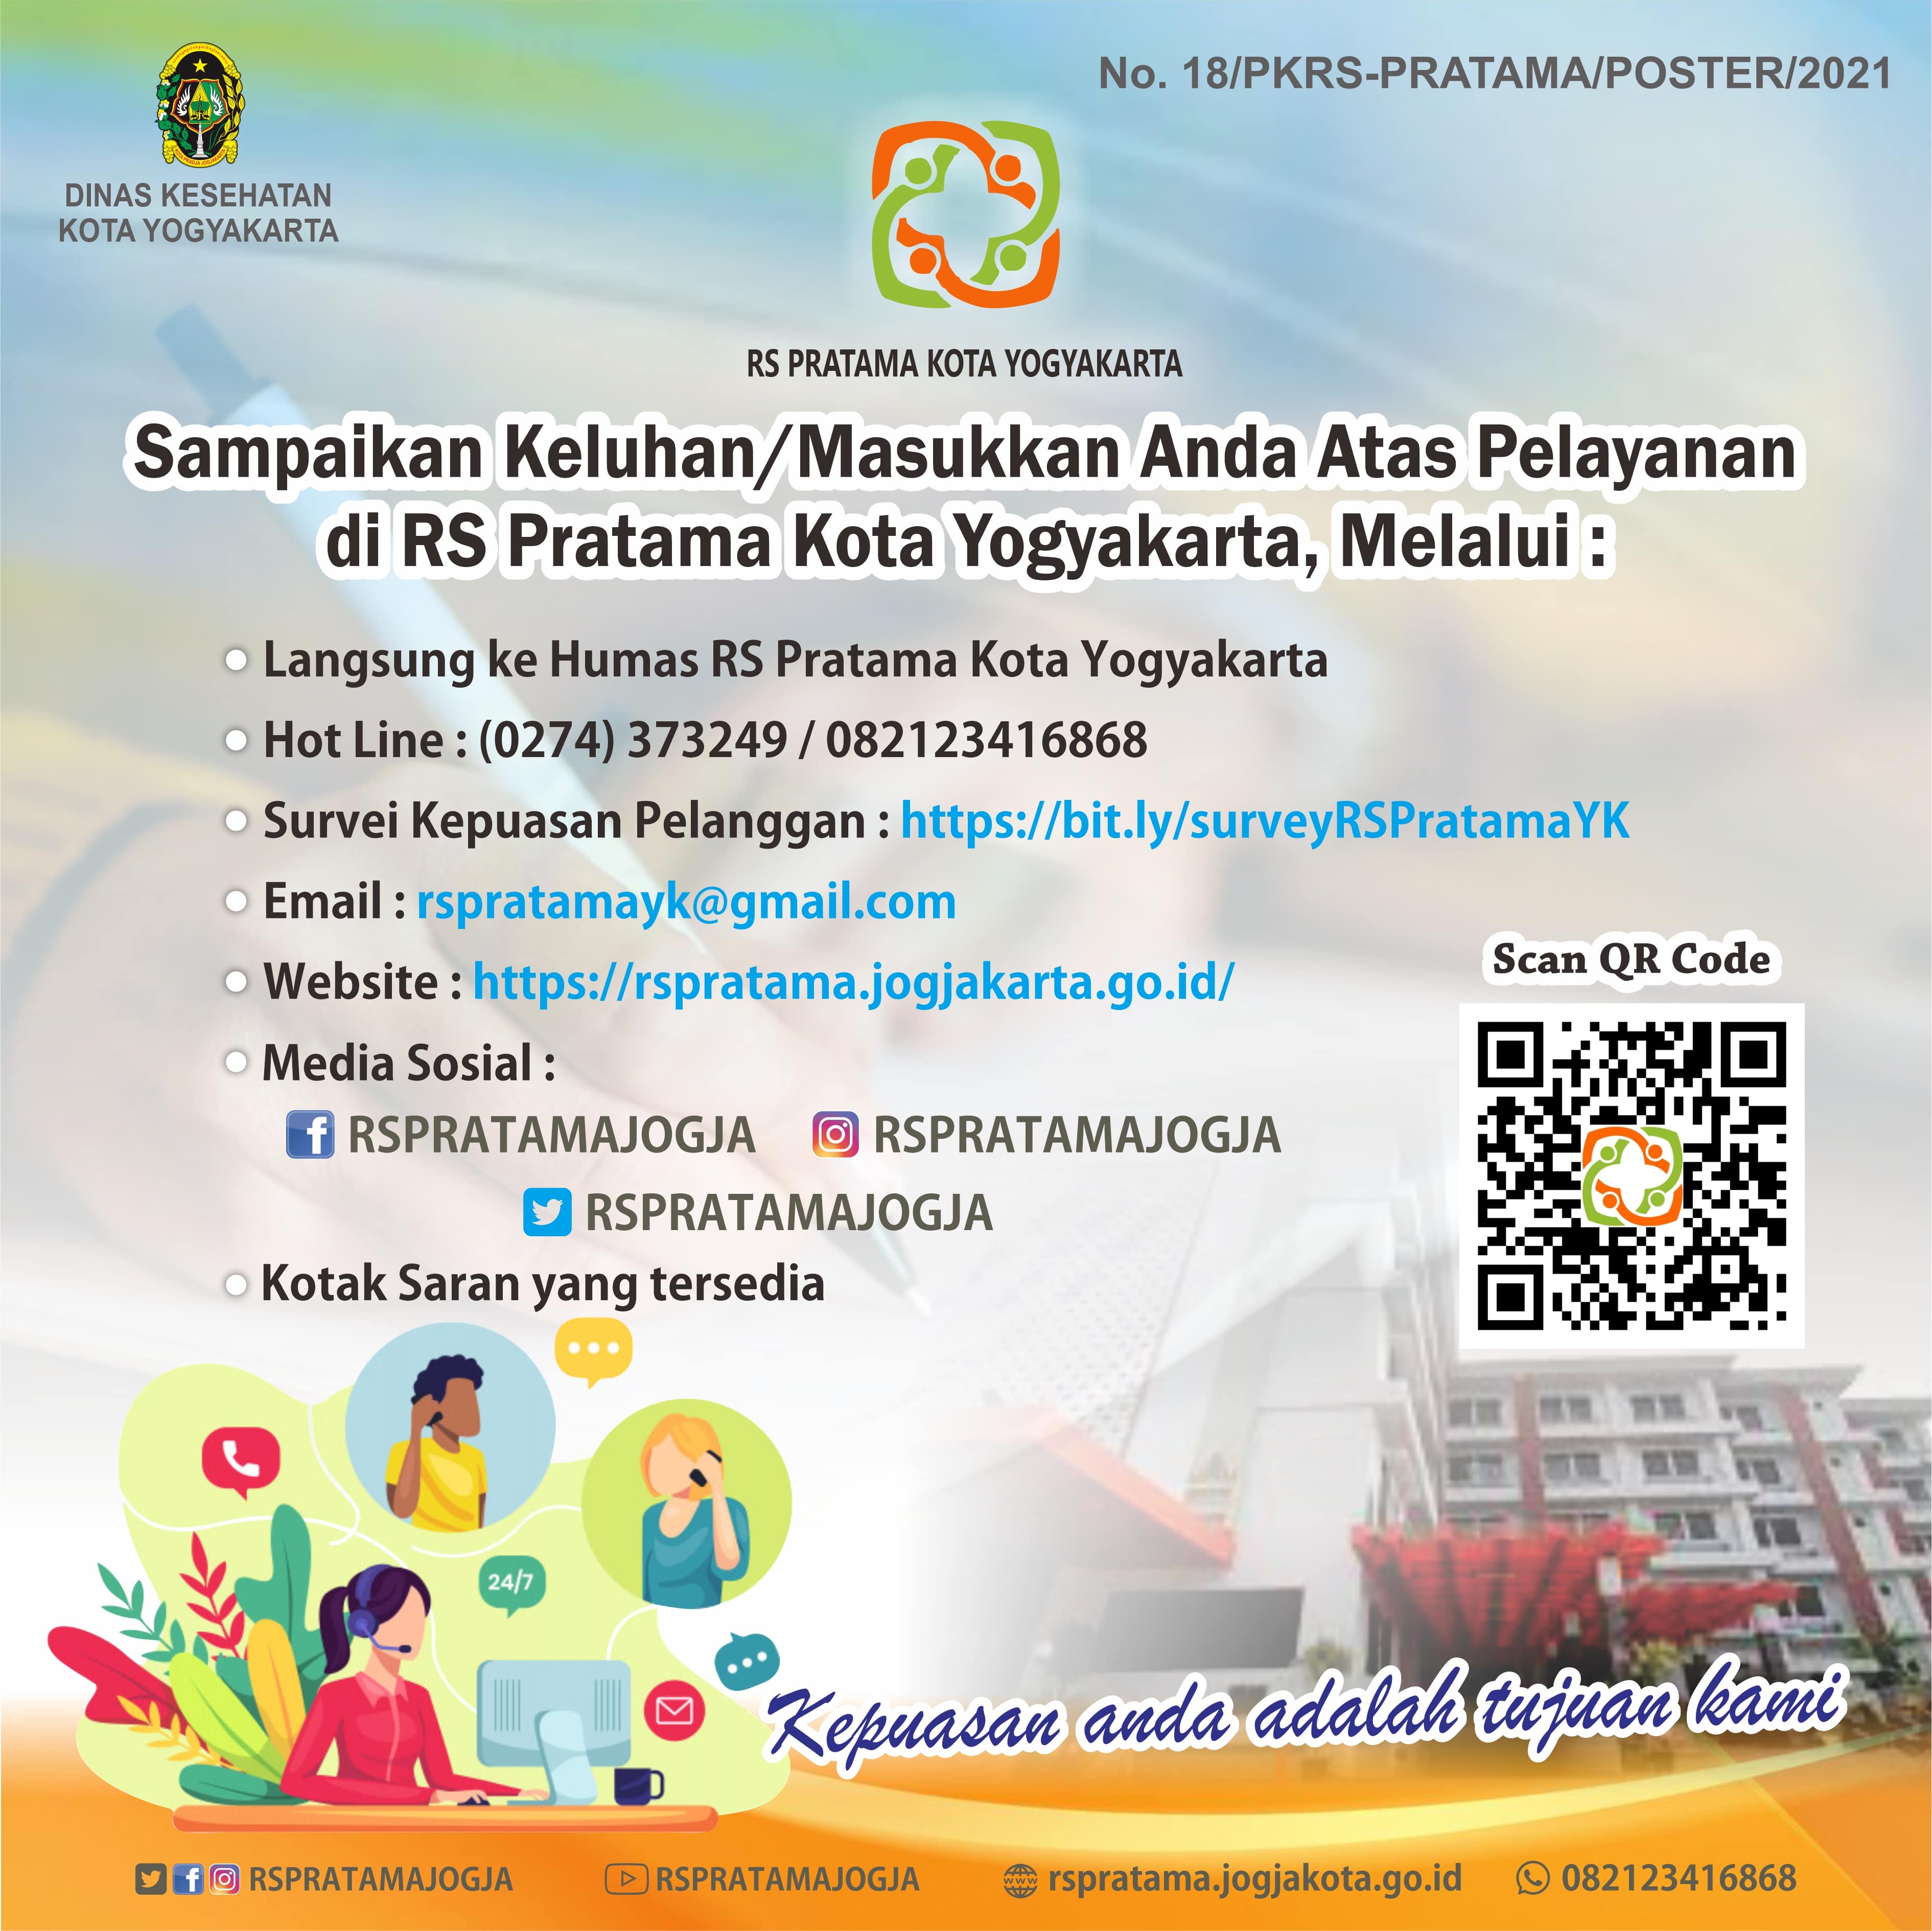 Sampaikan Keluhan/Masukkan Anda atas Pelayanan di RS Pratama Kota Yogyakarta